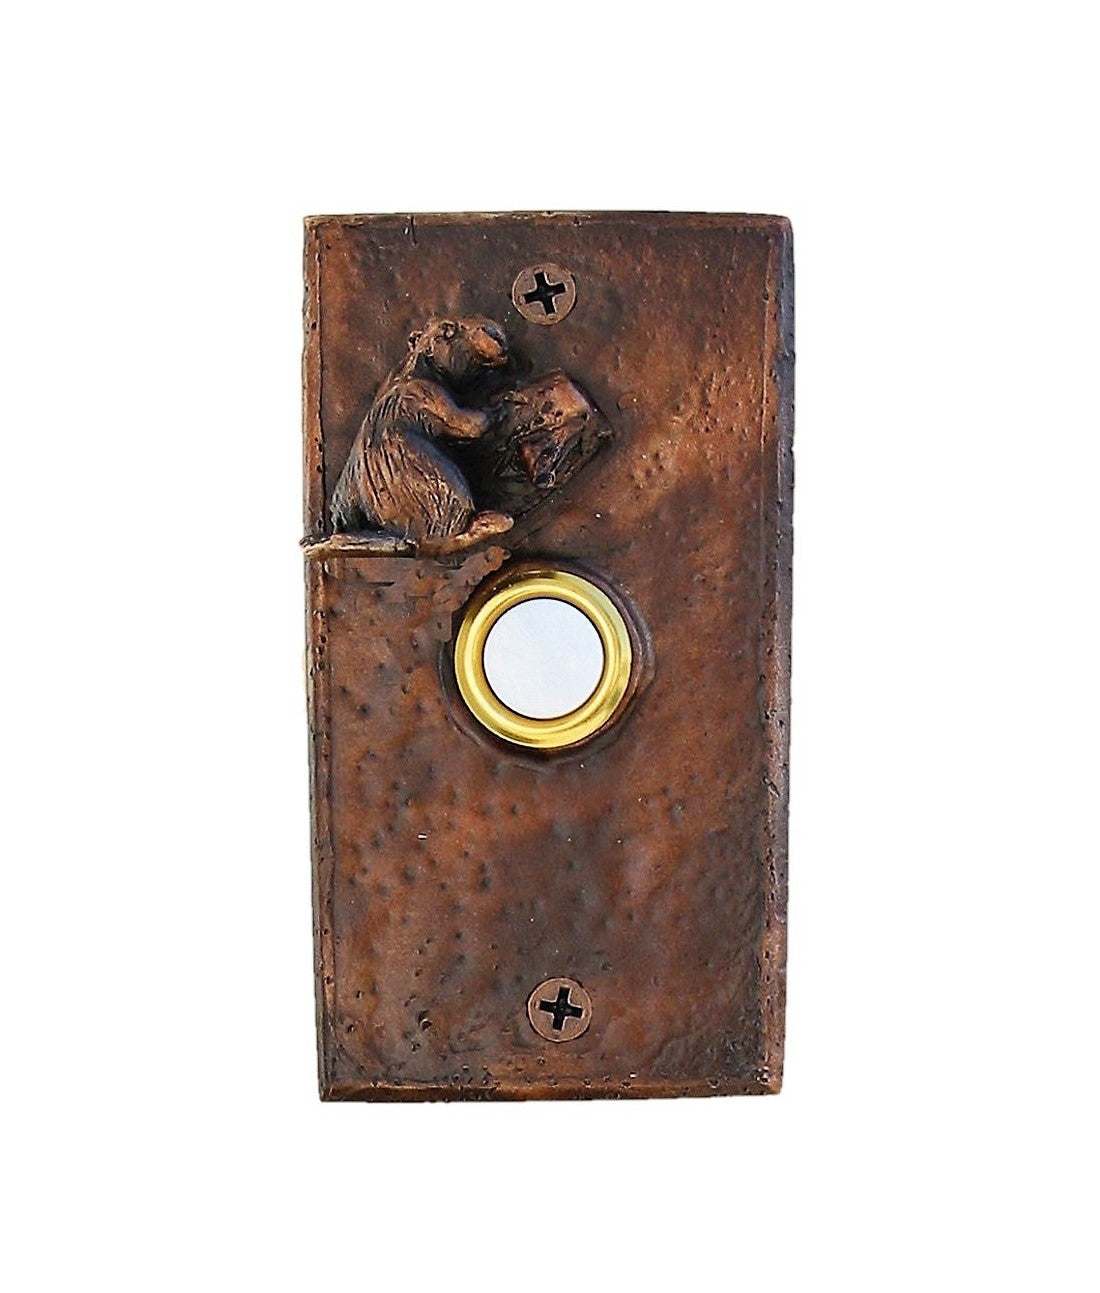 Bronze beaver doorbell made of bronze